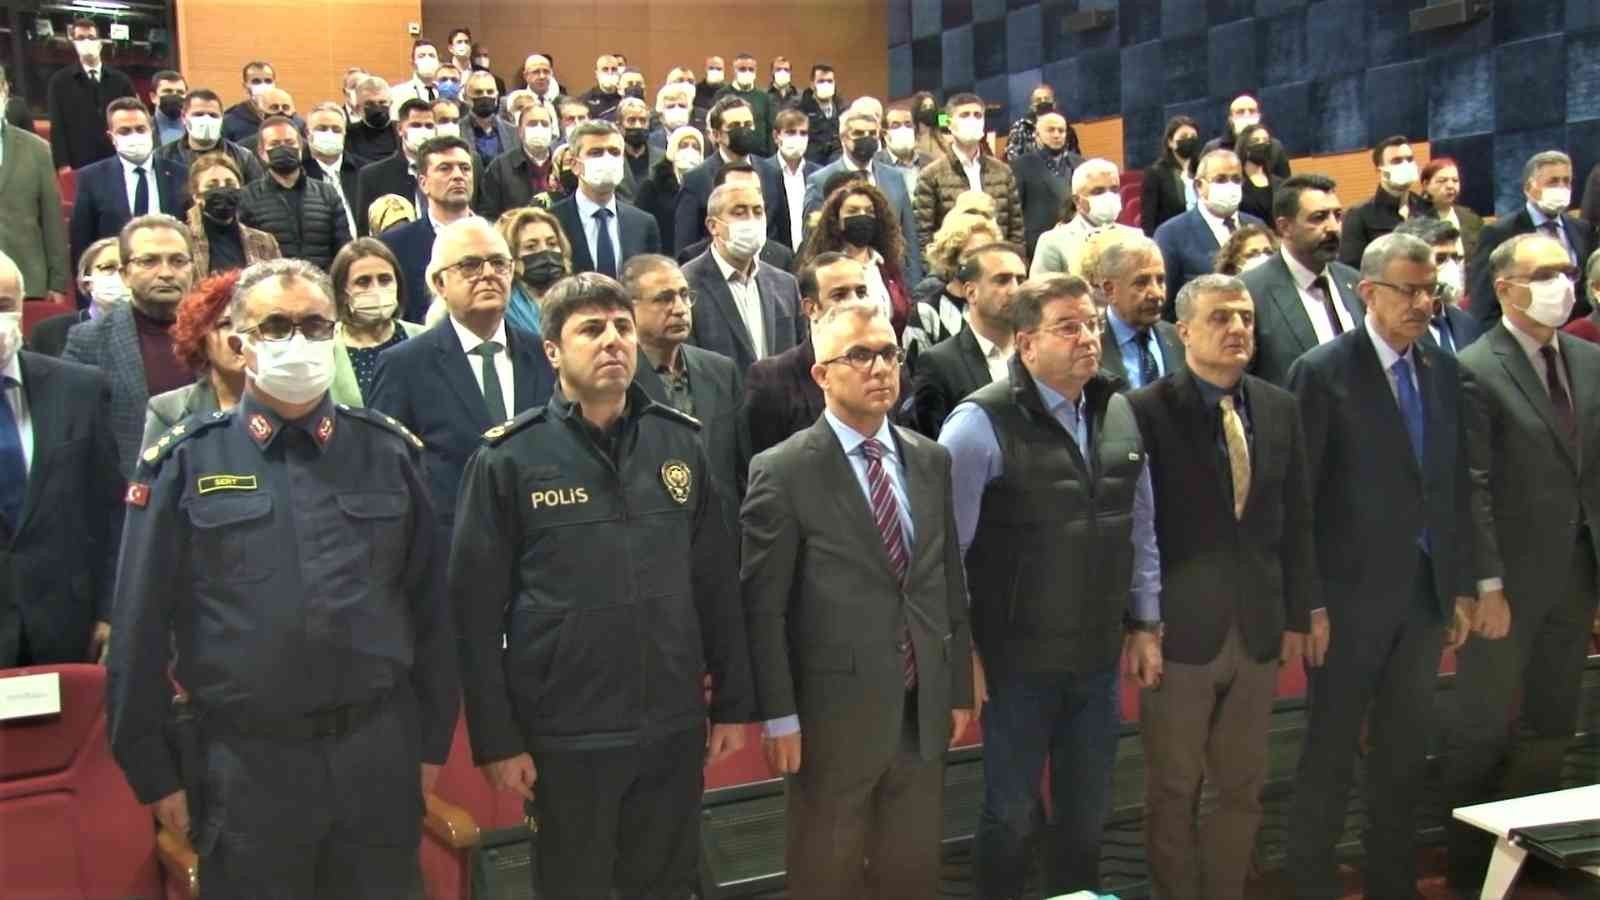 Başkan Ali Kılıç: “Emniyet personelimize yardımcı olmak boynumuzun borcu” #istanbul